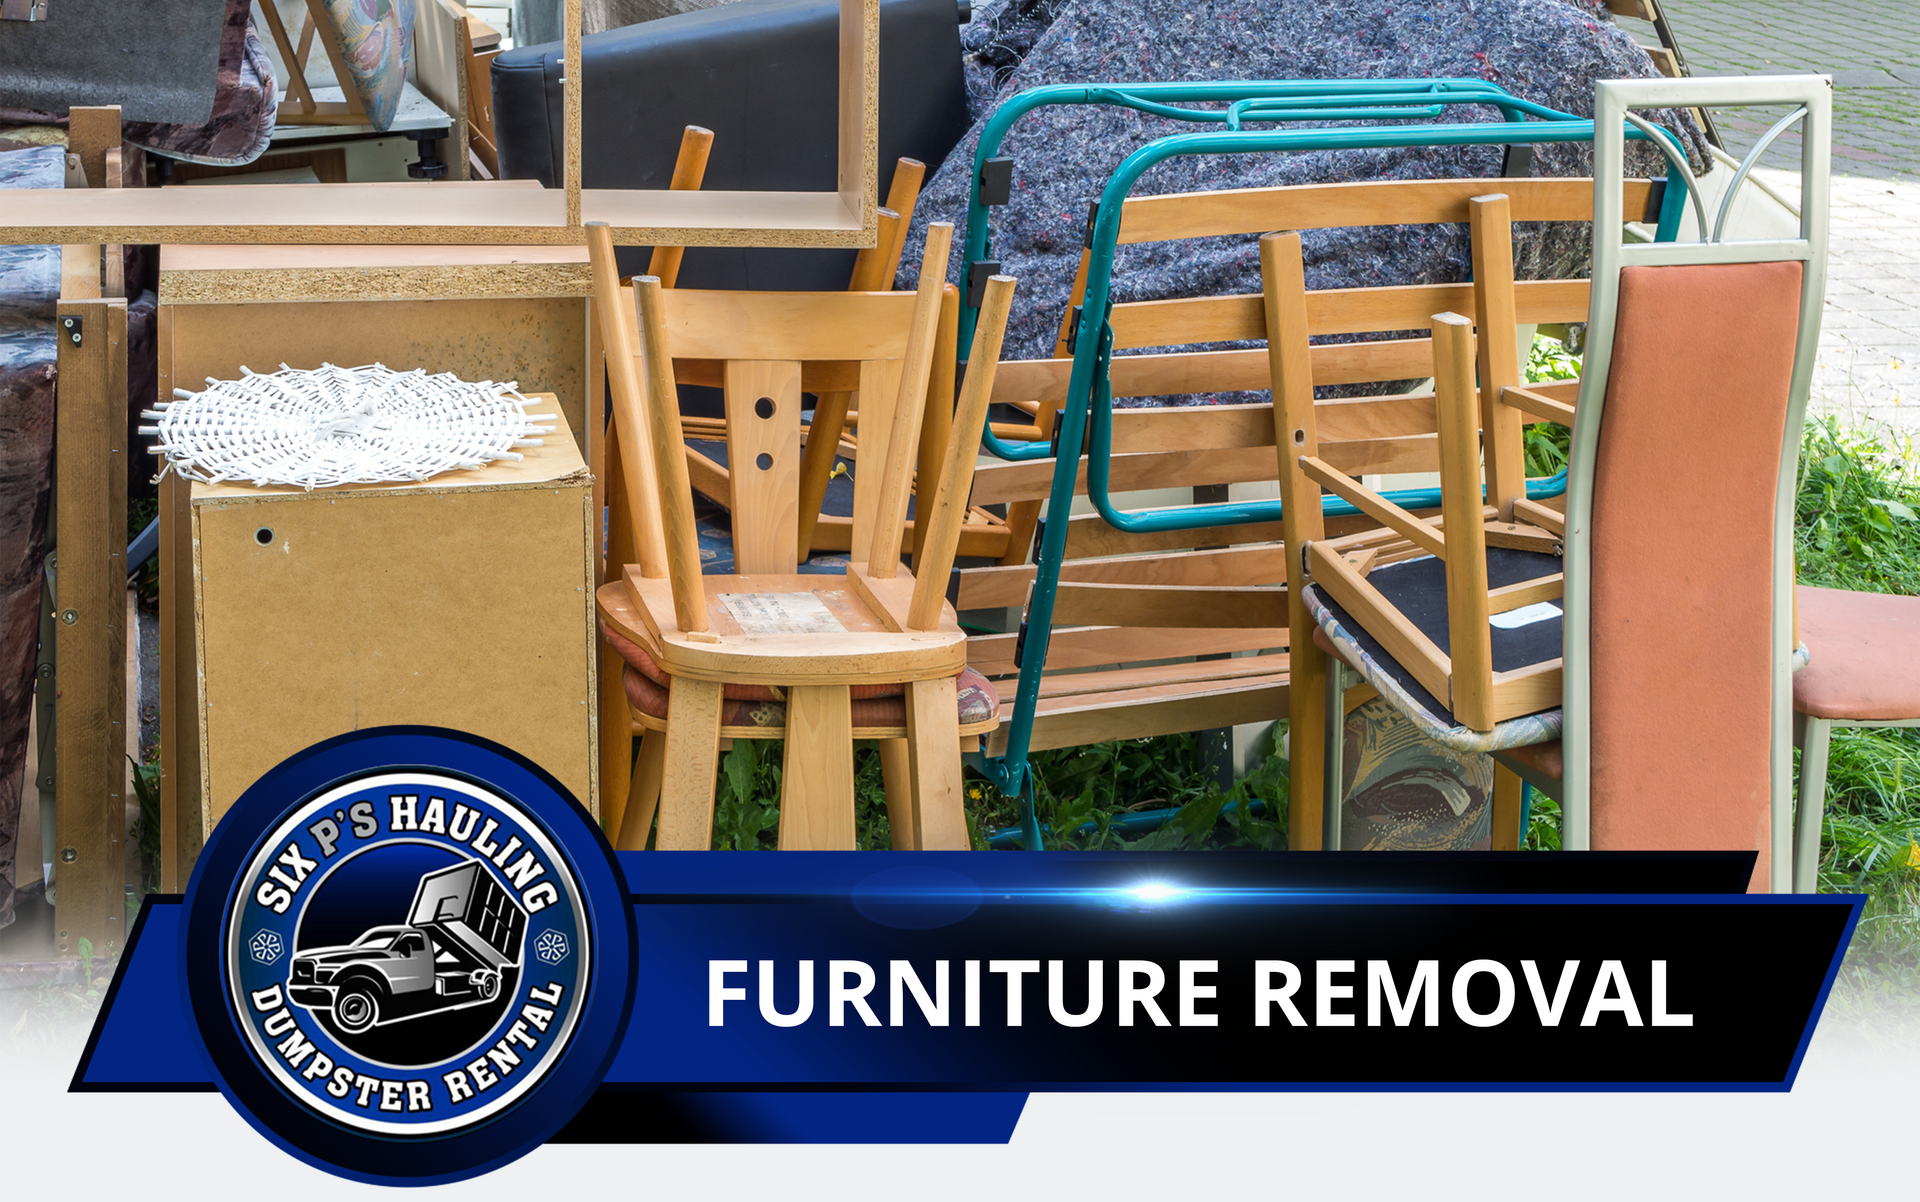 Furniture removal in Pomona, CA